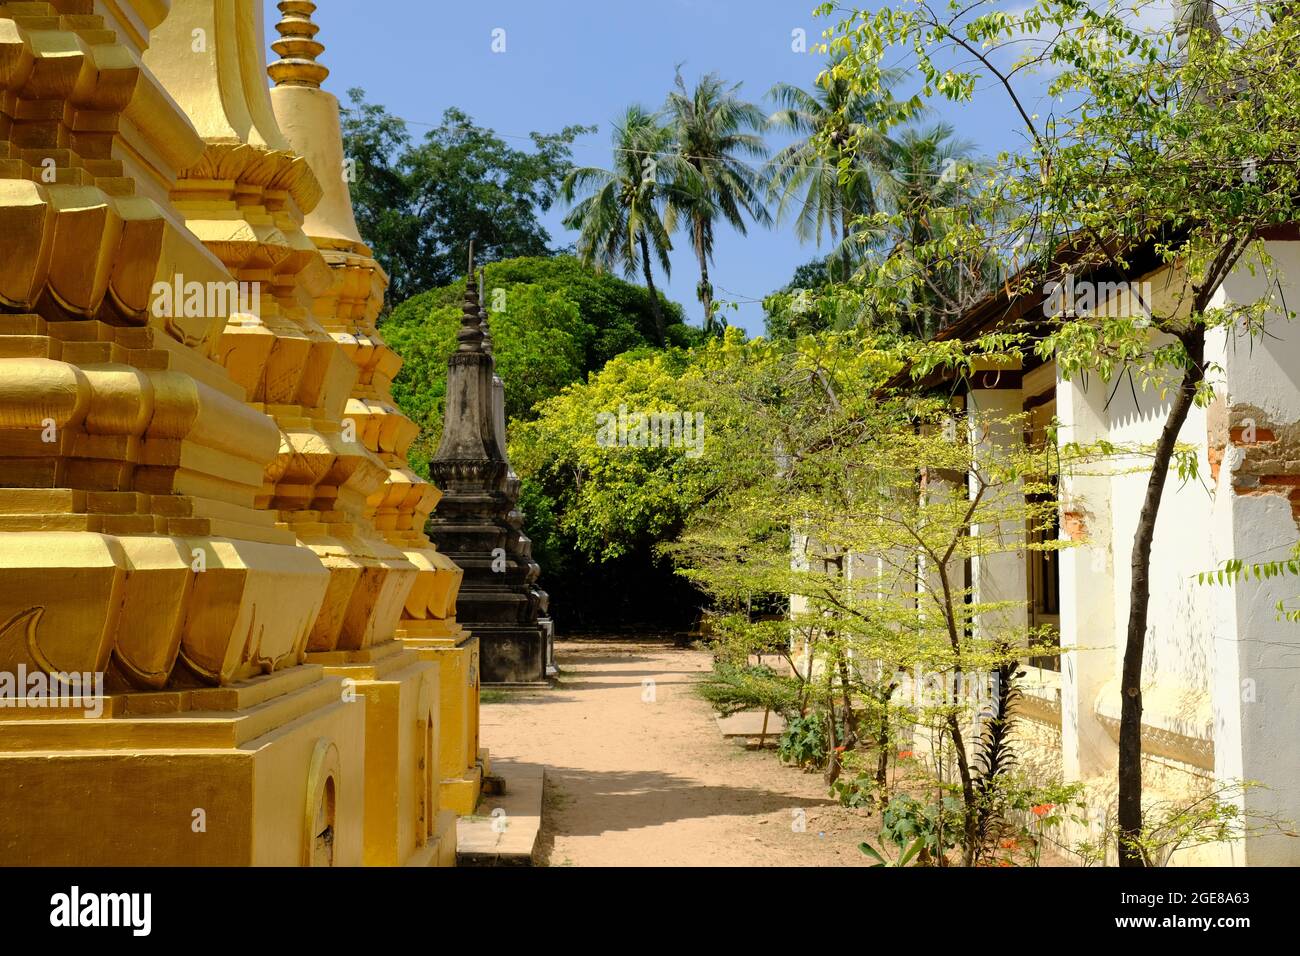 Cambodge Krong Siem Reap - Wat Bo vue sur le jardin avec stupas d'or Banque D'Images